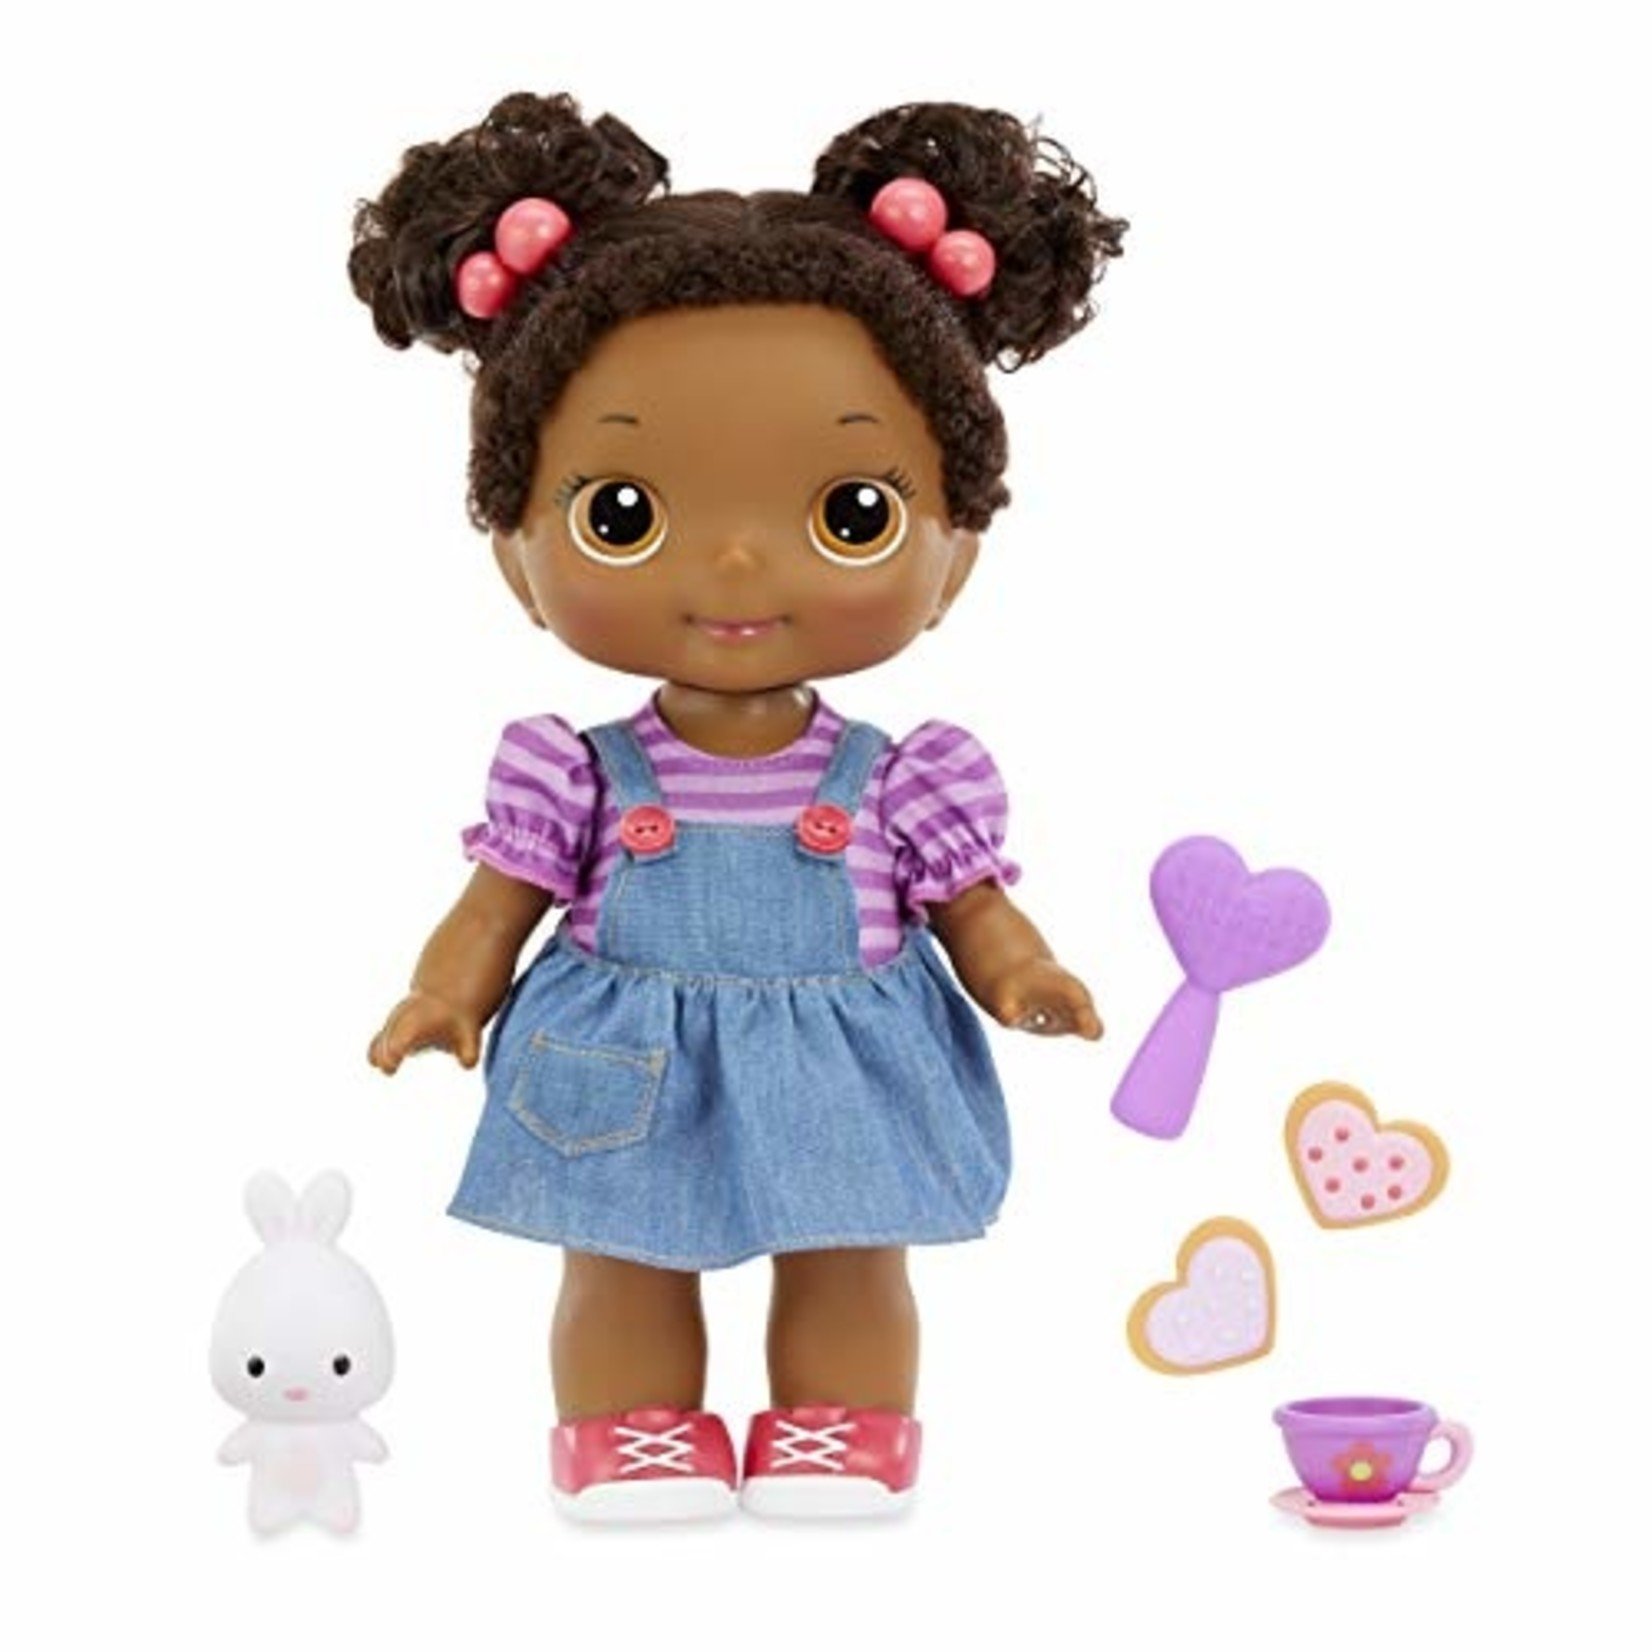 Sing-Along Ami 12-inch Lilly Tikes Preschool Doll